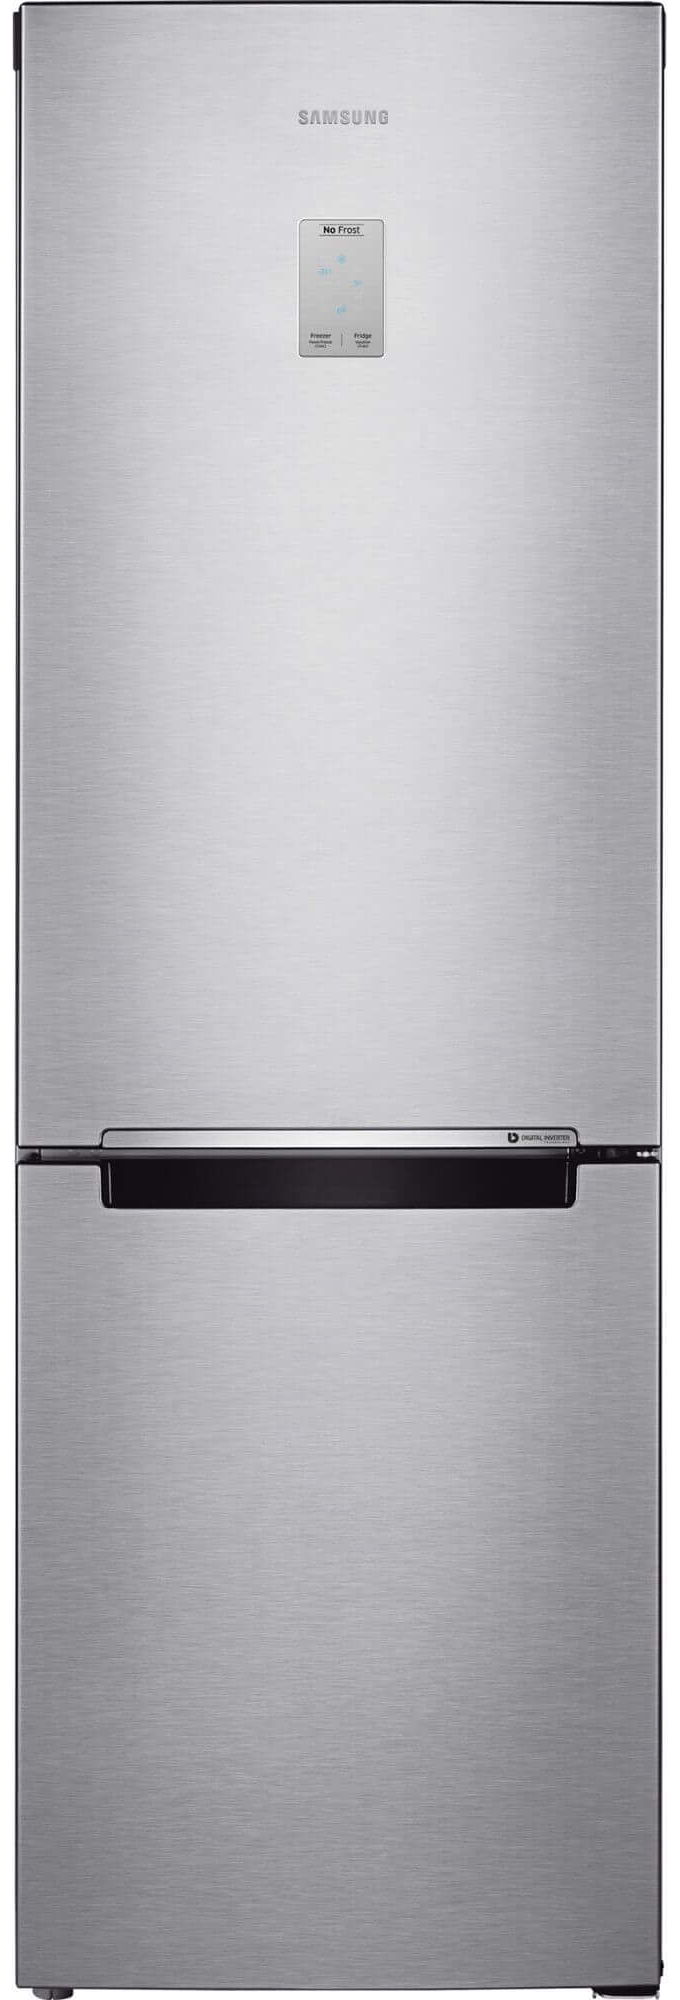 Неисправности холодильников Samsung